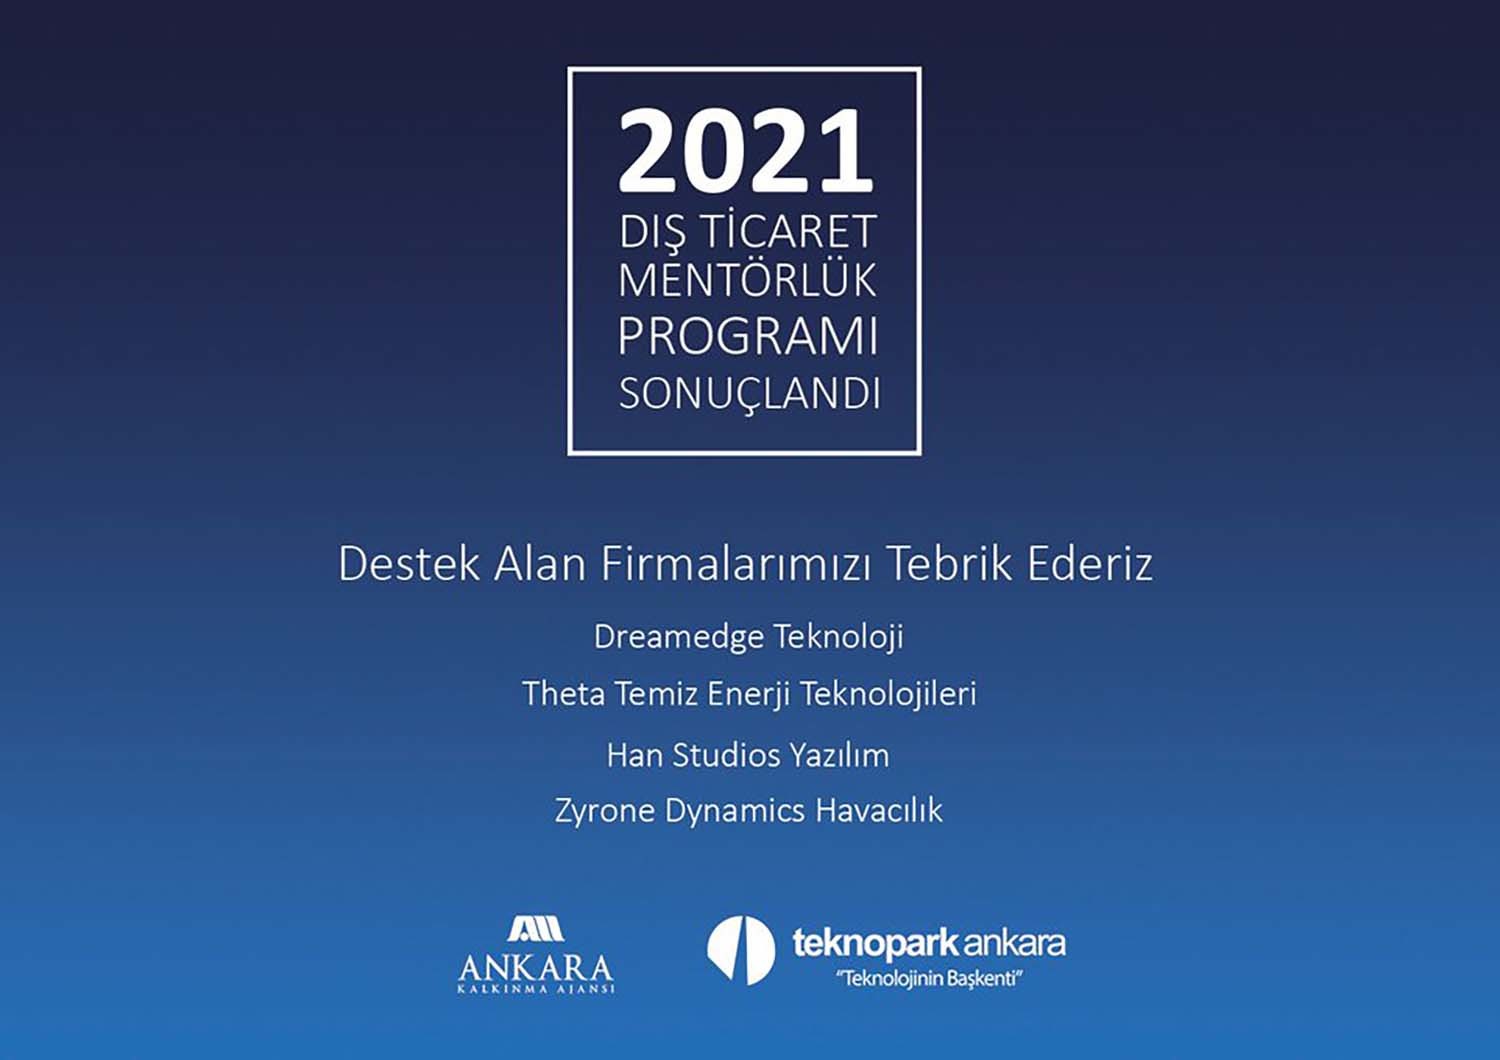 2021 Dış Ticaret Mentörlük Programı sonuçlandı Ankara Kalkınma Ajansı 2021    Dış Ticaret Mentörlük Programı sonuçlandı. Destek alan firmalarımızı tebrik ederiz. DreamEdge Teknoloji, Theta Temiz Enerji, Han Studios, Zyrone Dynamics